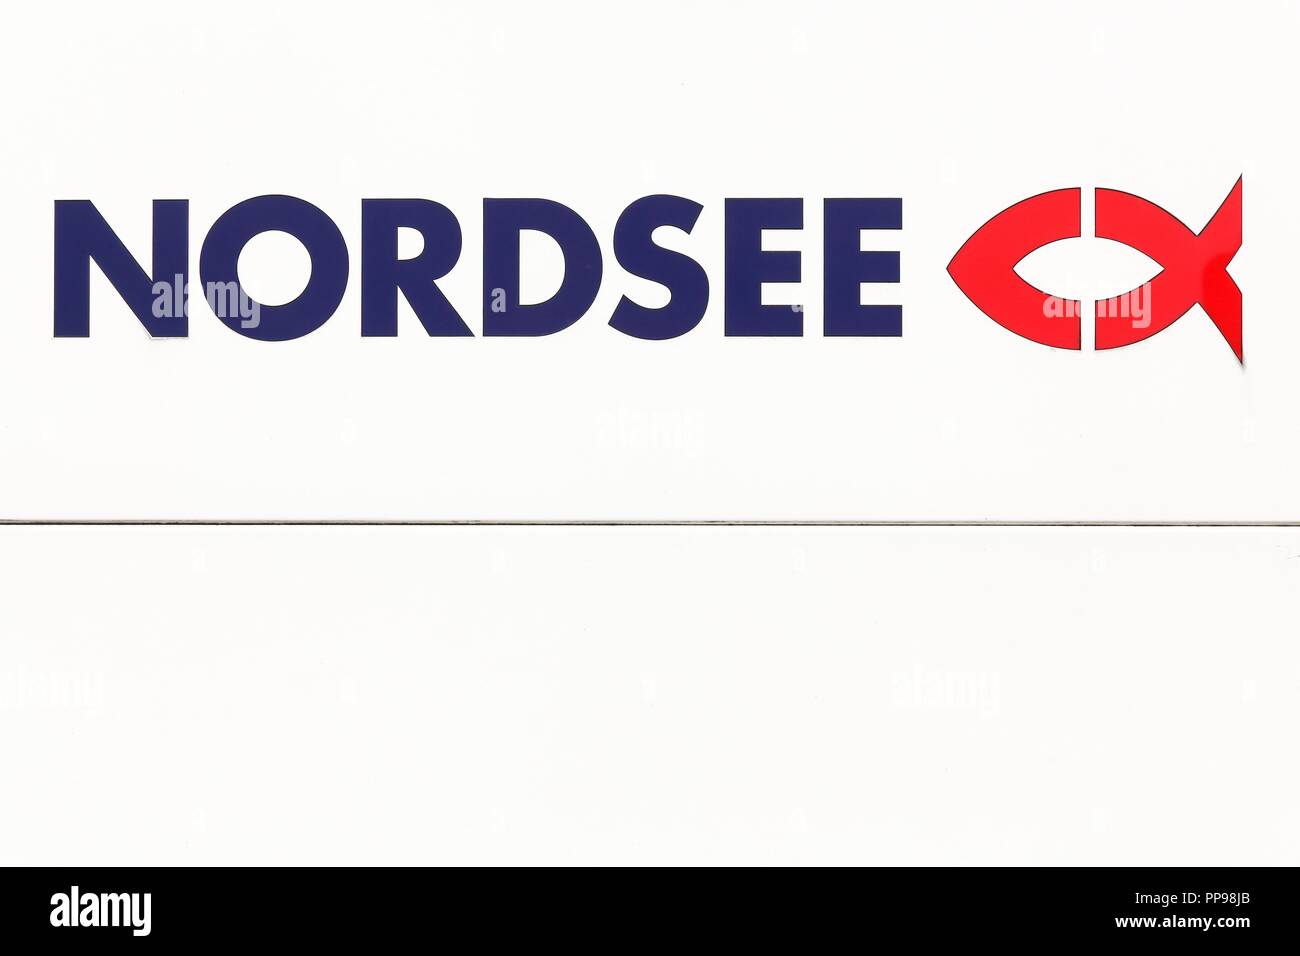 Osnabrück, Deutschland - 22. Juli 2018: Nordsee Logo auf einem Panel. Die Nordsee ist eine Deutsche Fast-Food-Restaurant kette, spezialisiert auf Meeresfrüchte Stockfoto